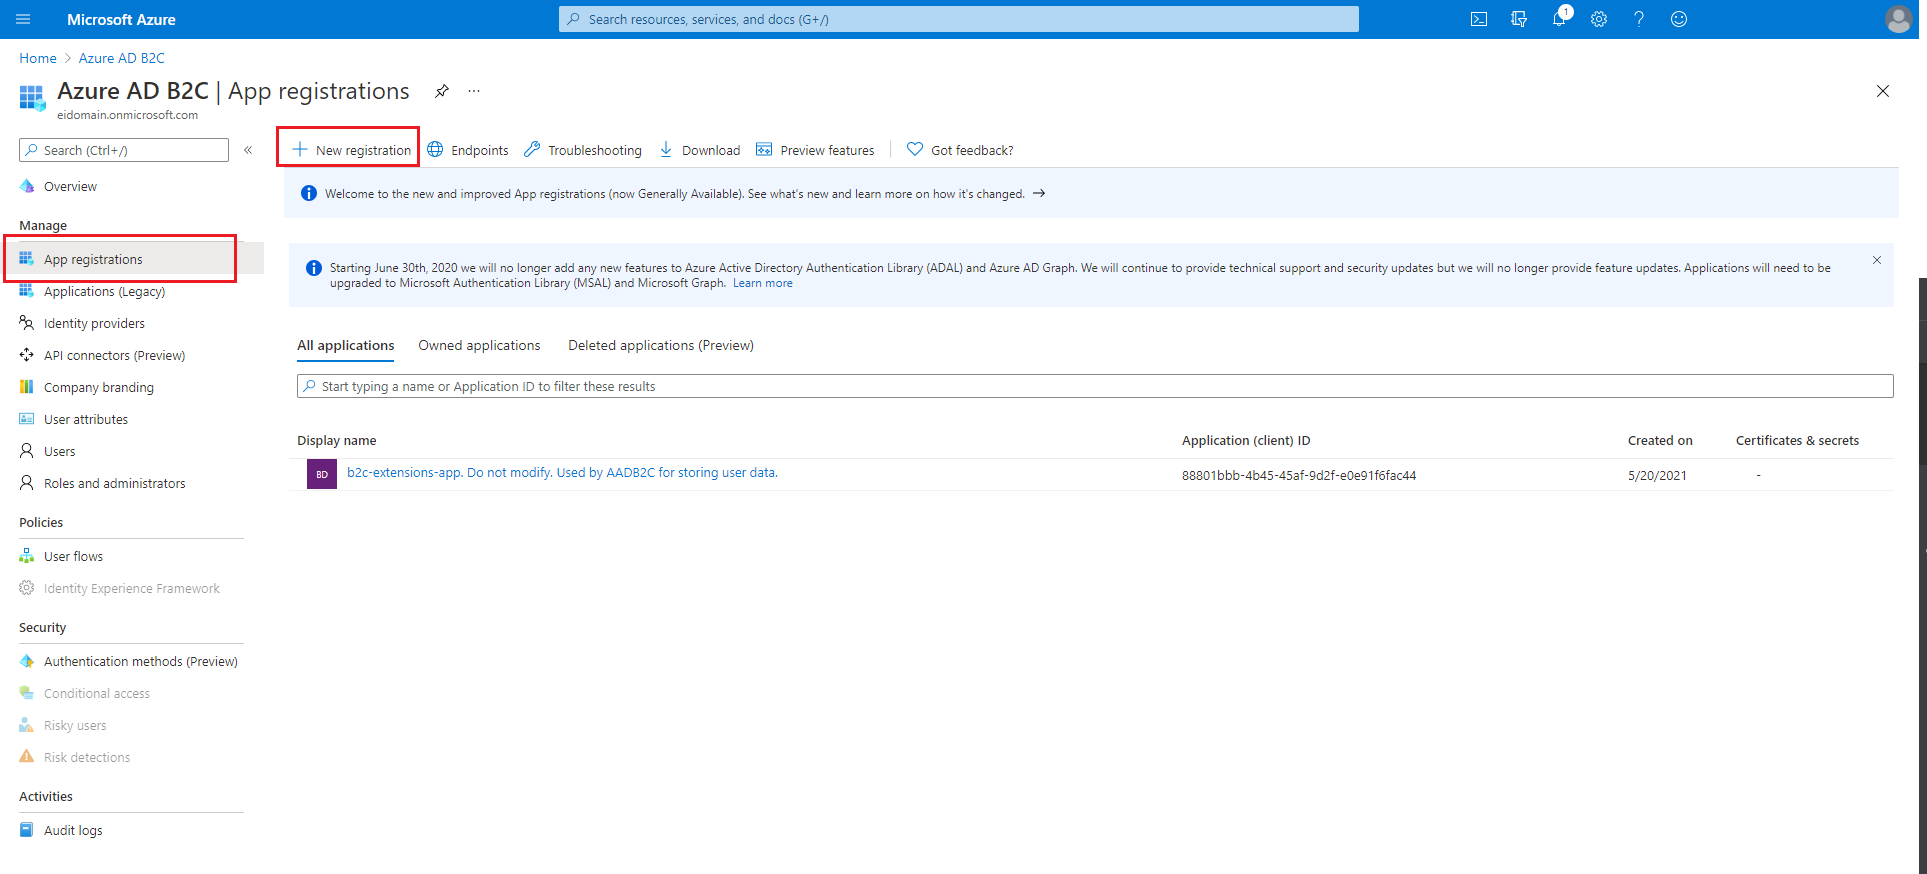 Captura de tela do portal do Azure mostrando a tela Registros de aplicativo do Azure AD B2C.